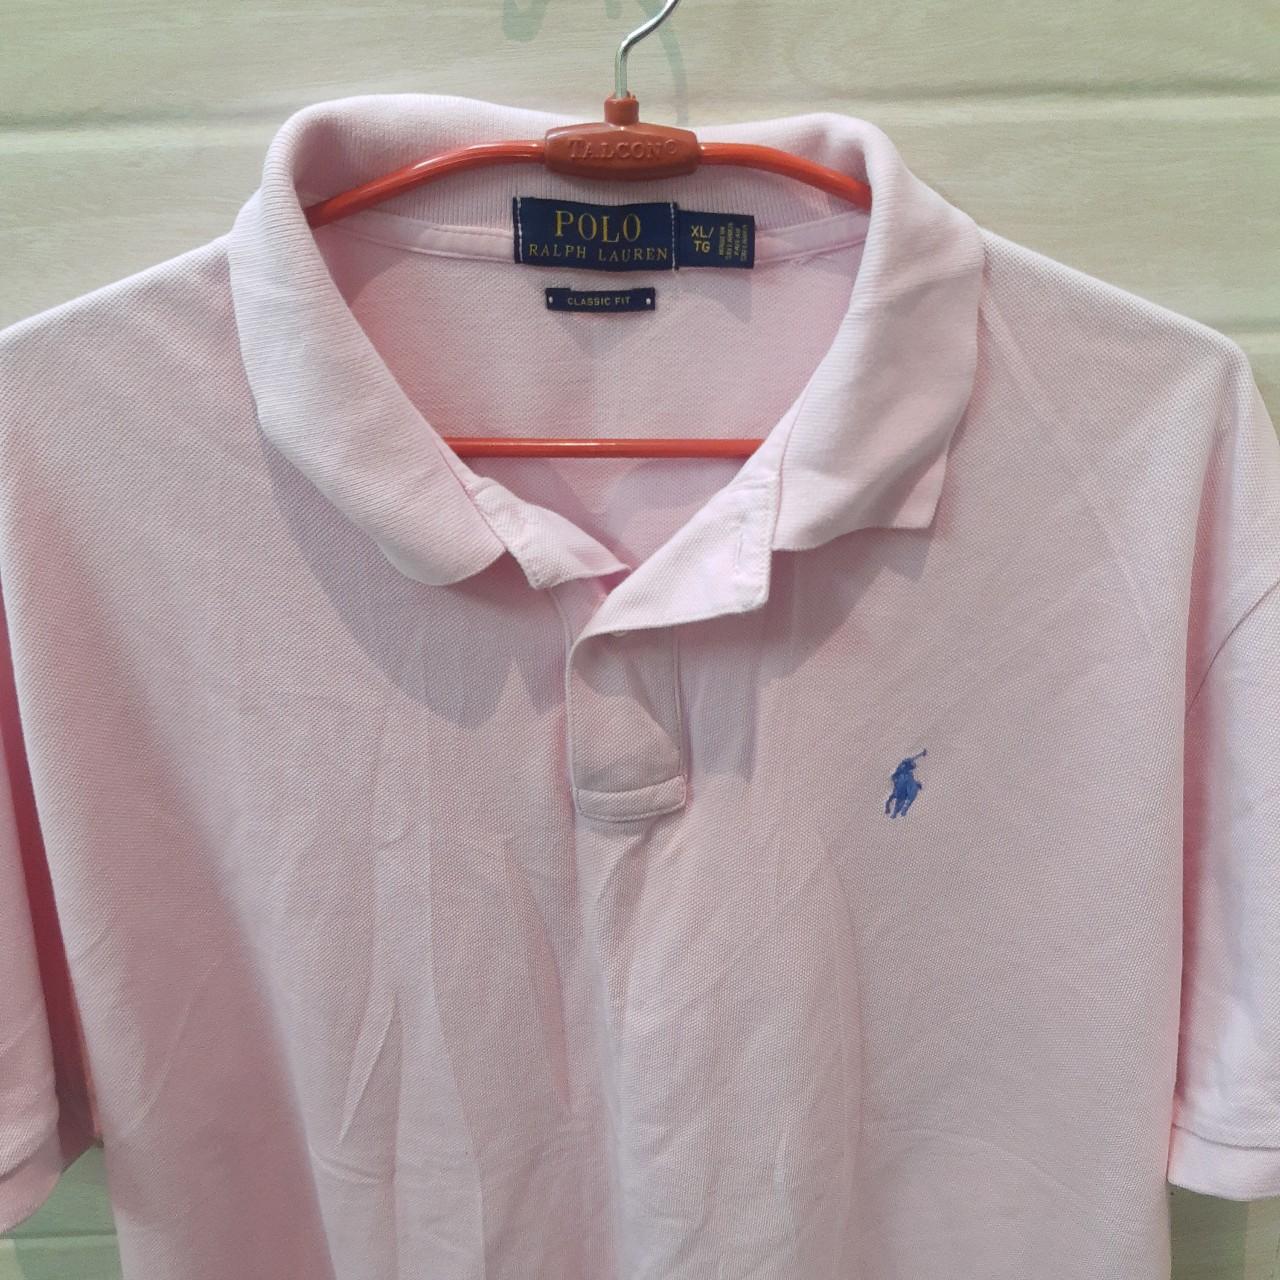 Ralph Lauren Baby Pink Polo T-Shirt, XL fits true to... - Depop